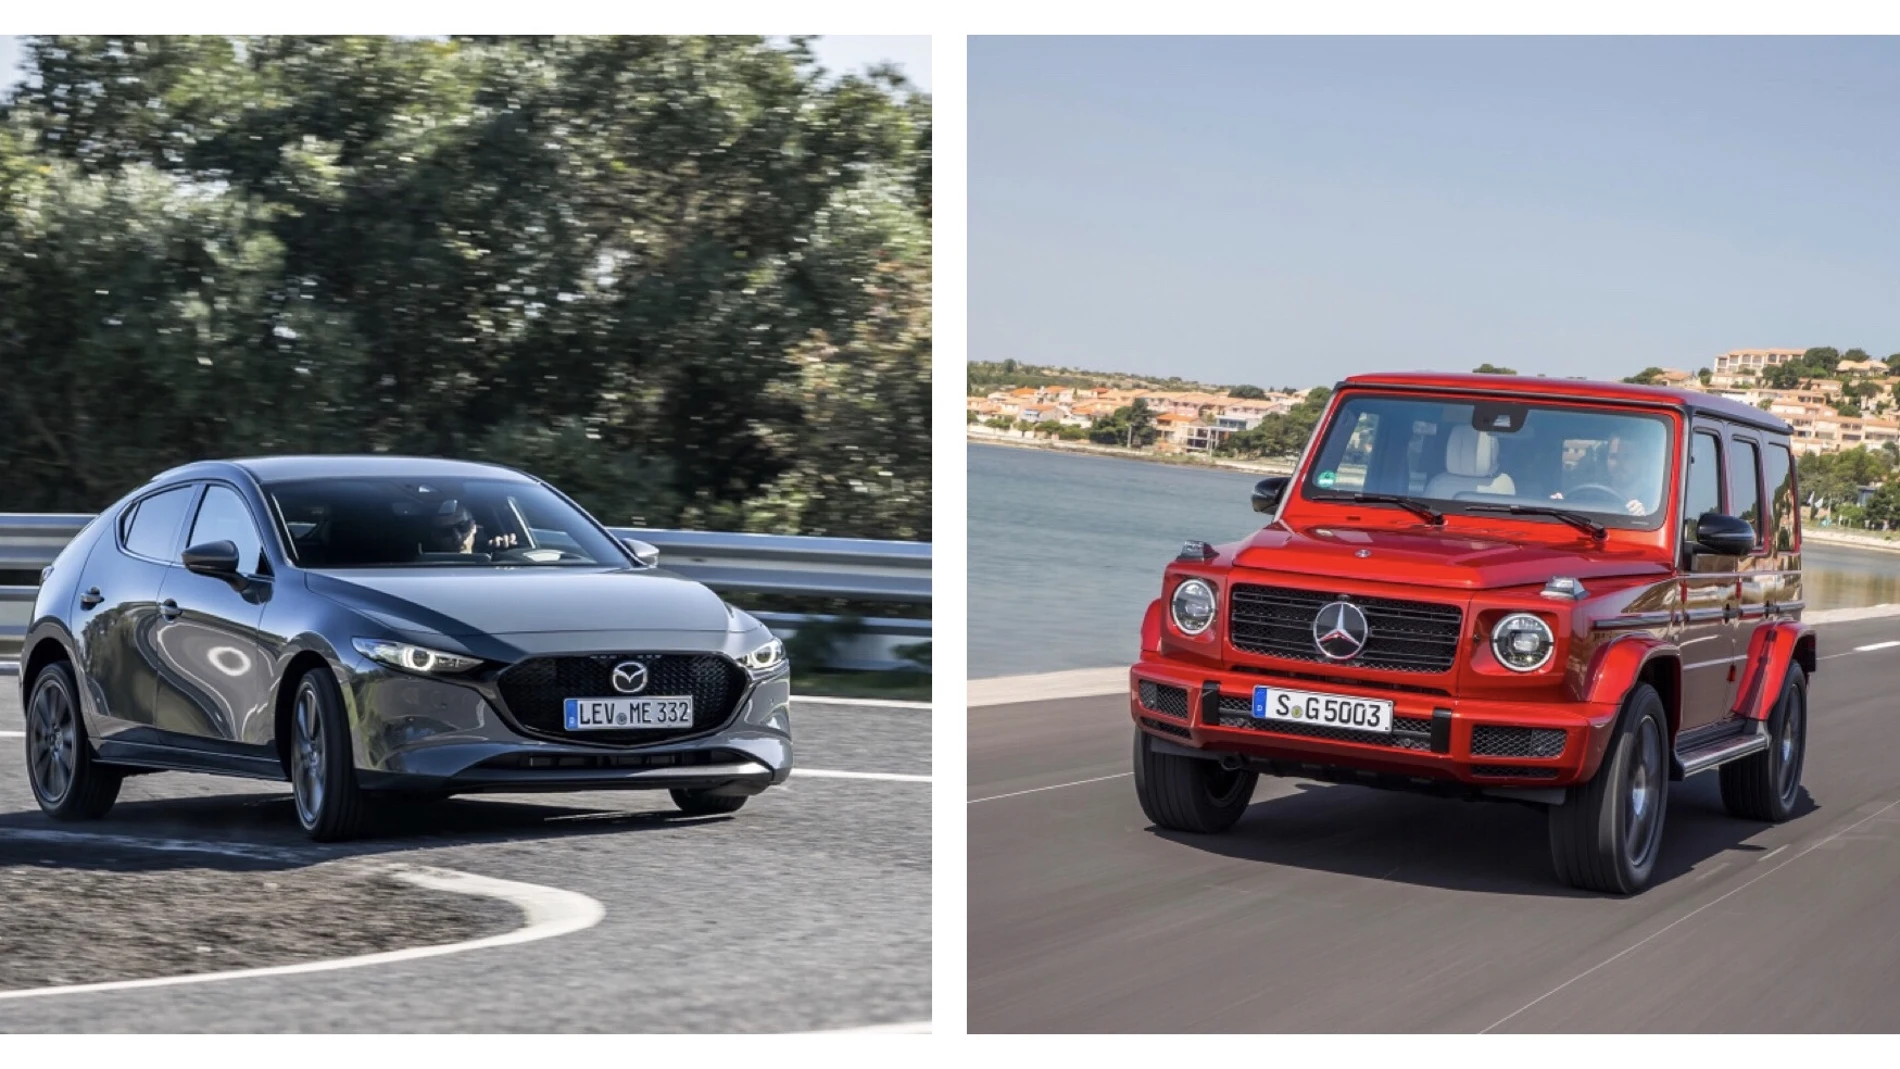 ¿Qué coche es más seguro? ¿El pequeño Mazda 3 o el gigantesco Mercedes Clase G?